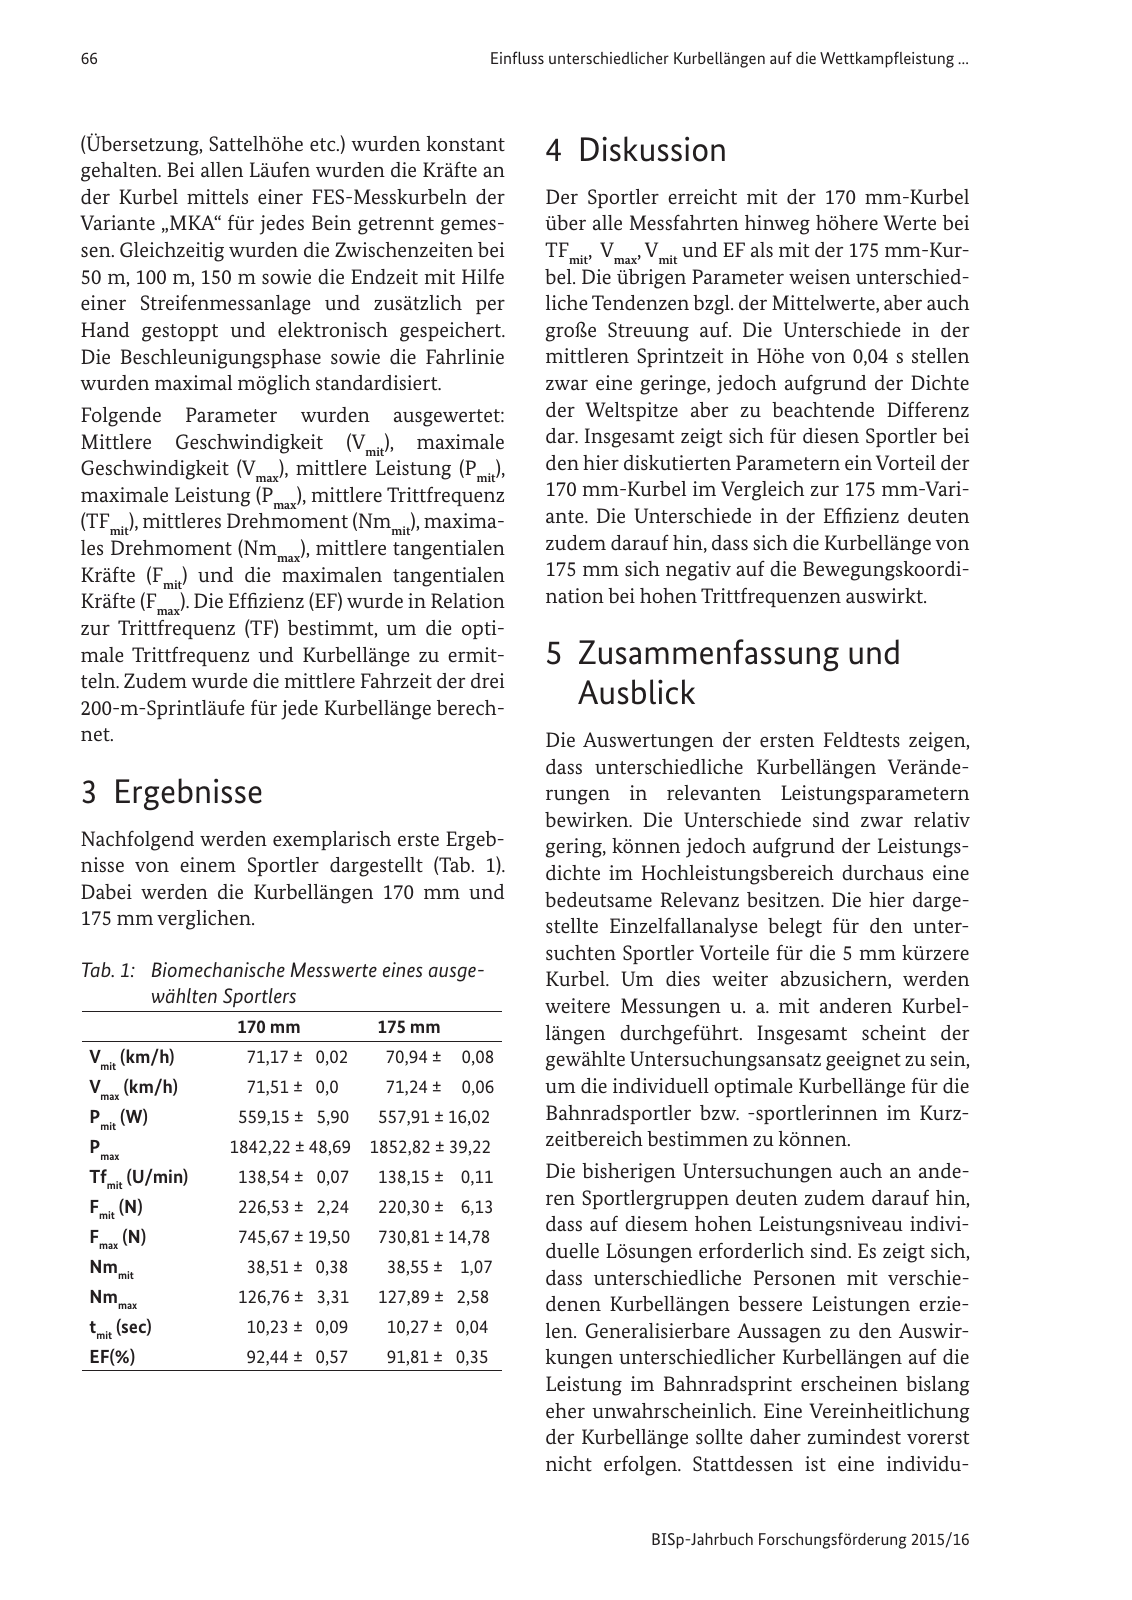 Vorschau BISp-Jahrbuch Forschungsförderung 2015/16 Seite 68